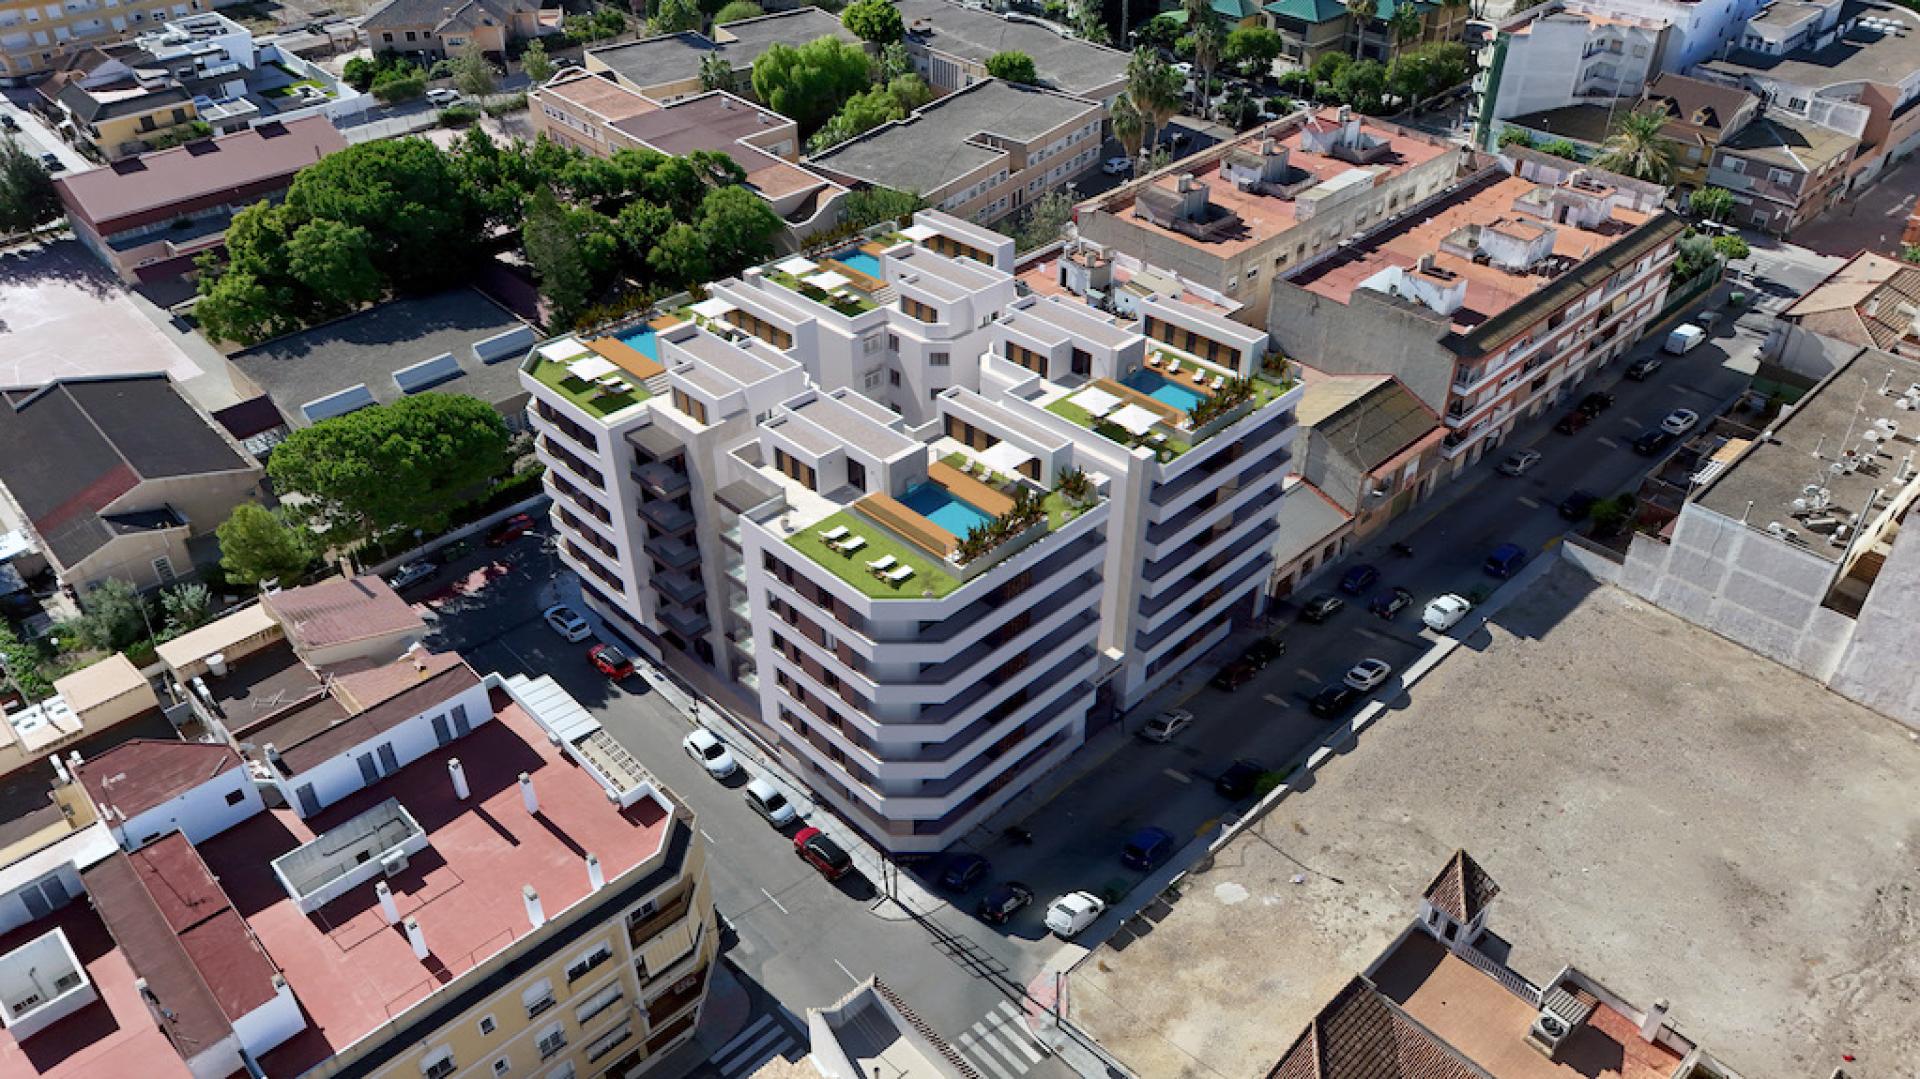 3 sypialnia Mieszkanie z balkonem W Almoradi - Nowa konstrukcja in Medvilla Spanje